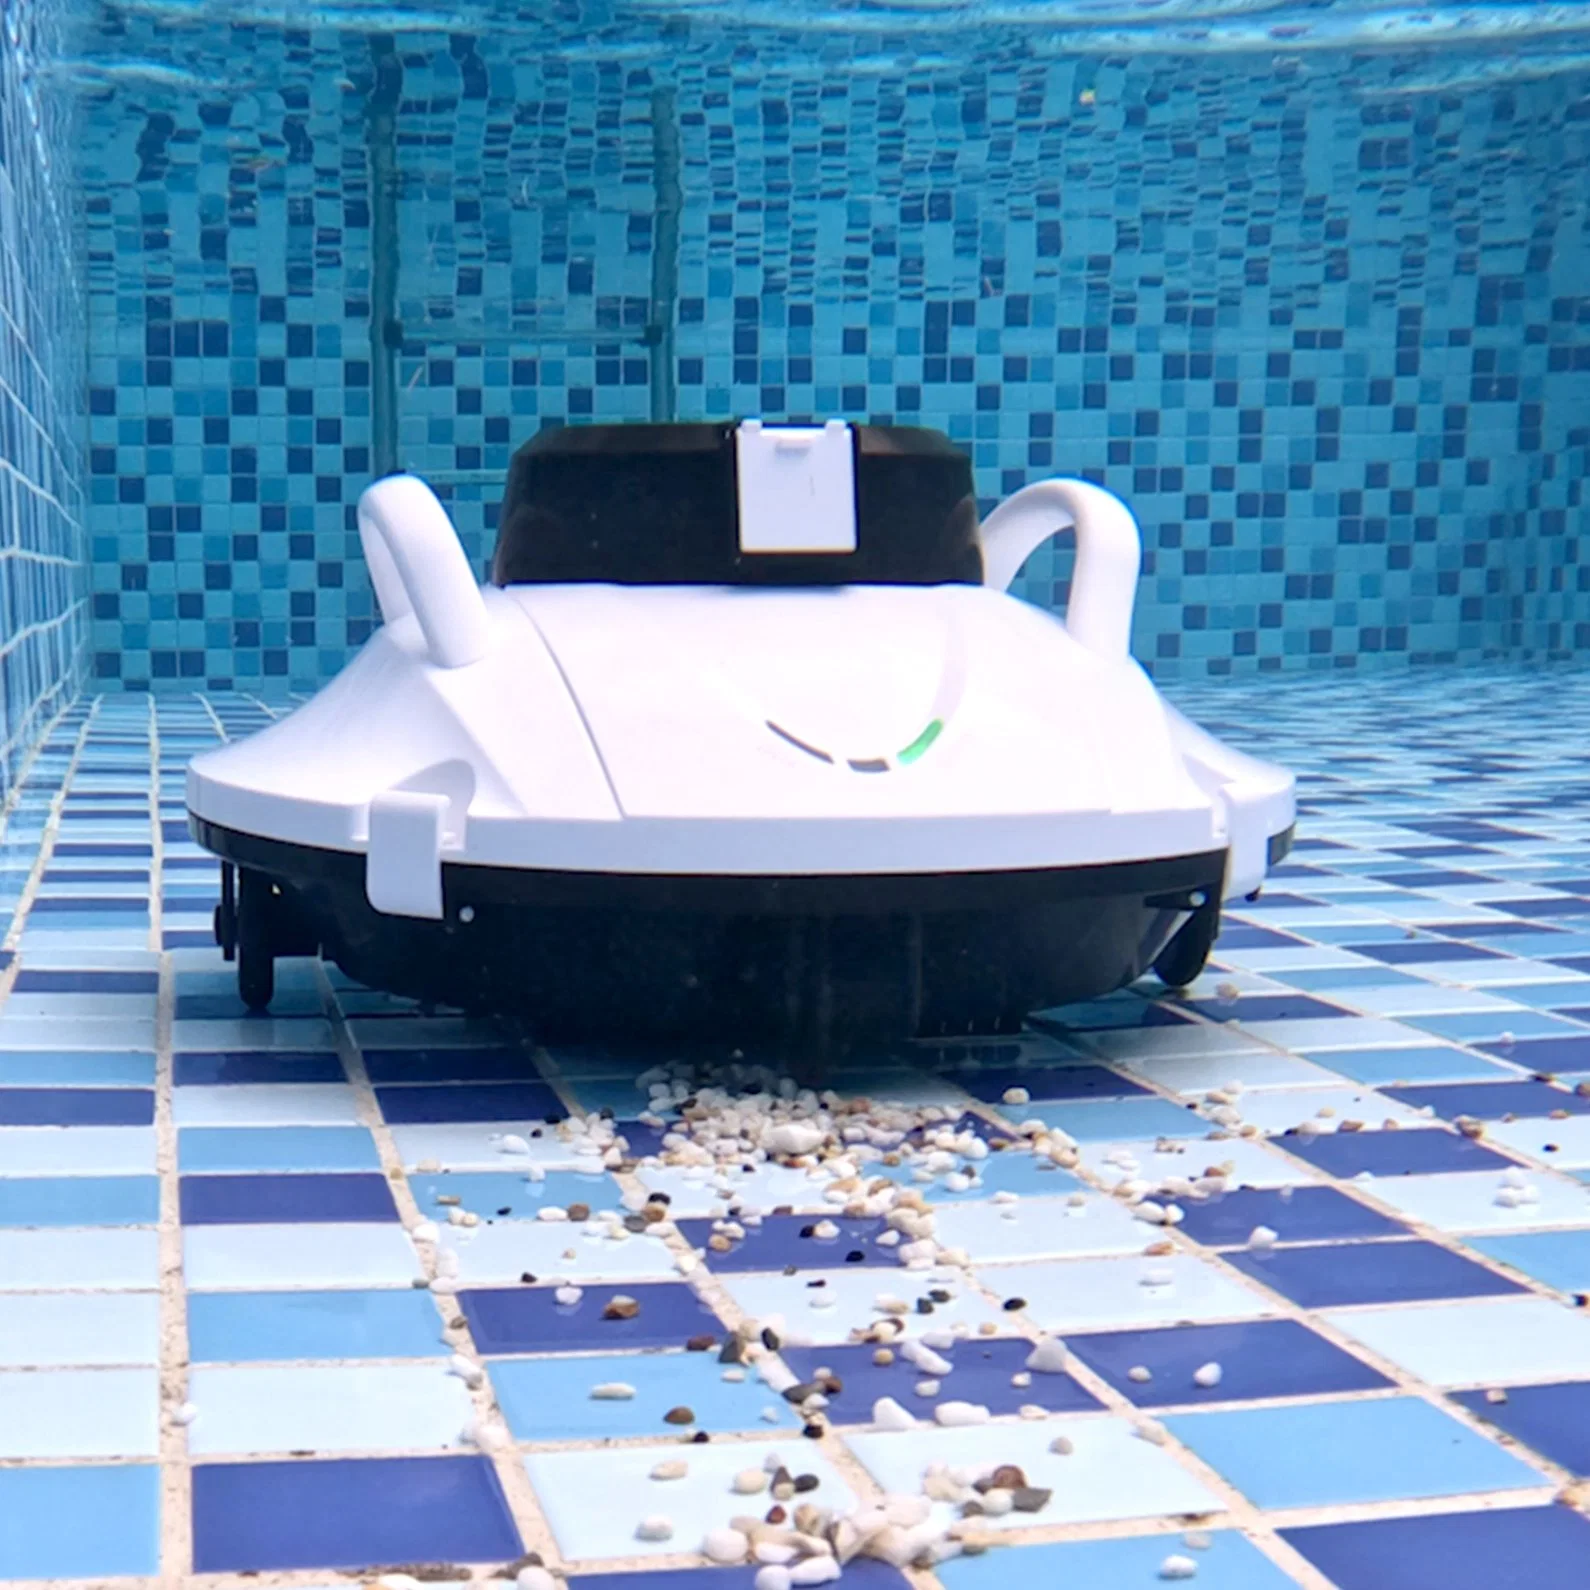 Производитель Подводная техника для очистки бассейнов, роботизированная система автоматической очистки бассейнов Инструмент Водные игры Jet лыжи Water Clean Robot Mop Pool Пылесос